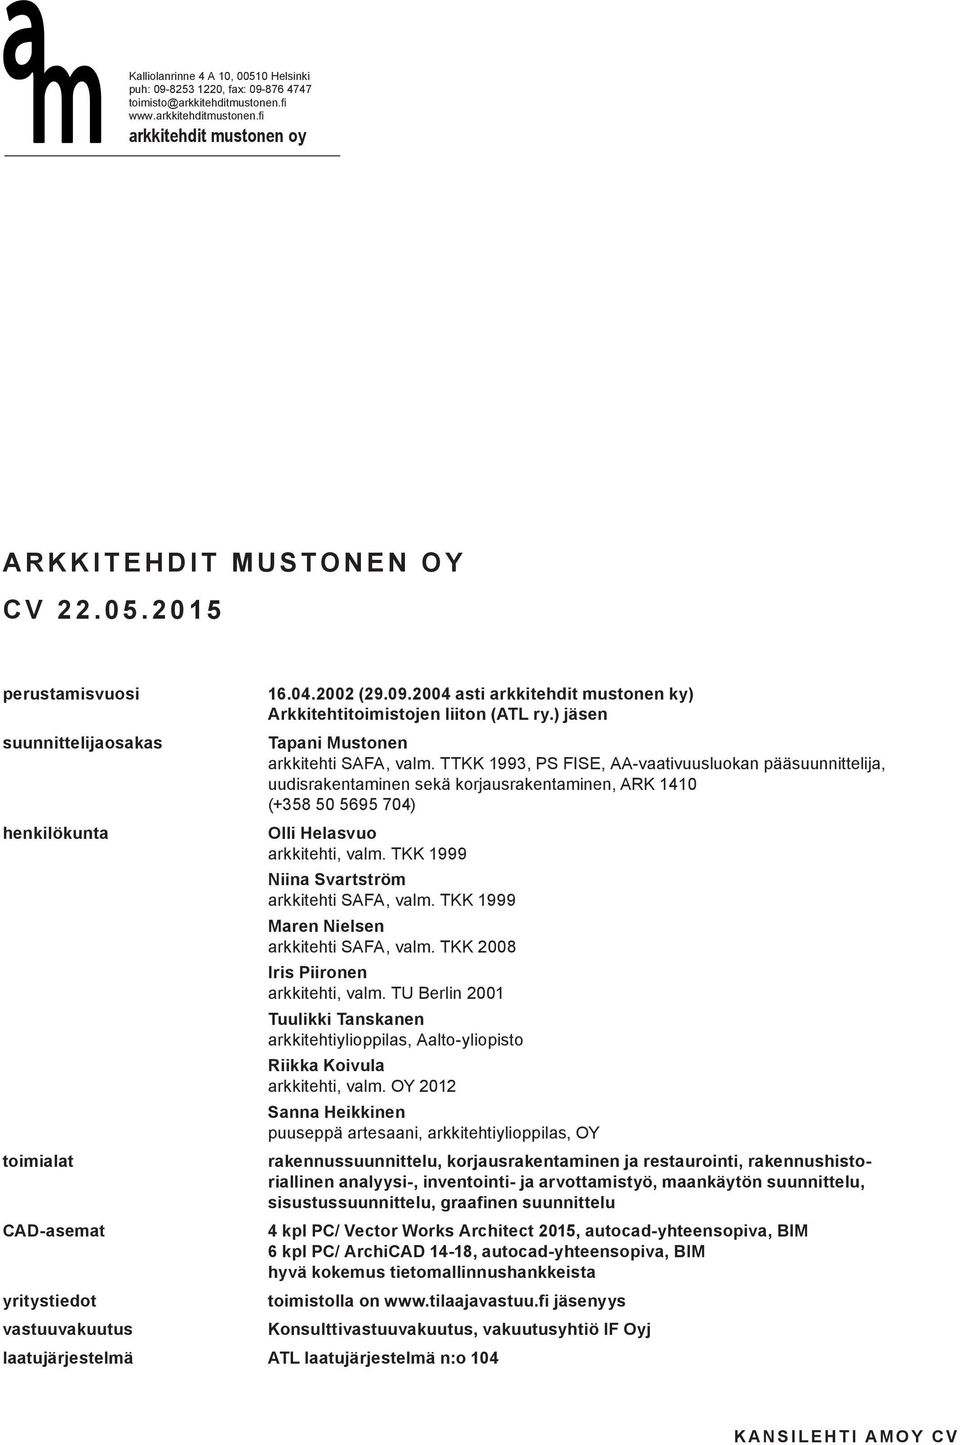 TTKK 1993, PS FISE, AA-vaativuusluokan pääsuunnittelija, uudisrakentaminen sekä korjausrakentaminen, ARK 1410 (+358 50 5695 704) Olli Helasvuo arkkitehti, valm.